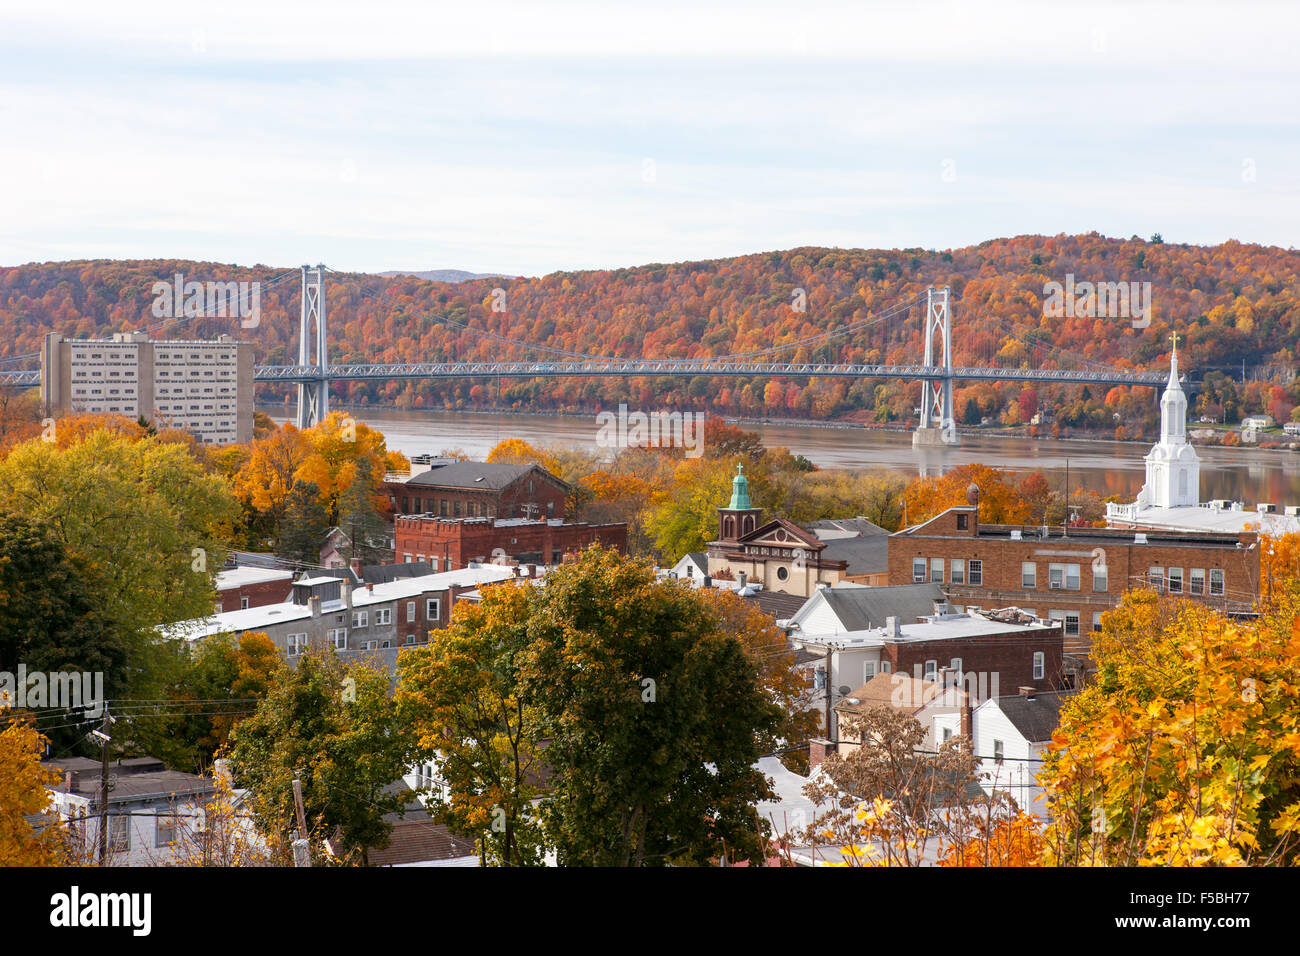 Vue aérienne de la promenade sur l'Hudson de Poughkeepsie et le Mid-Hudson Bridge au cours de l'automne dans la région de Poughkeepsie, New York Banque D'Images